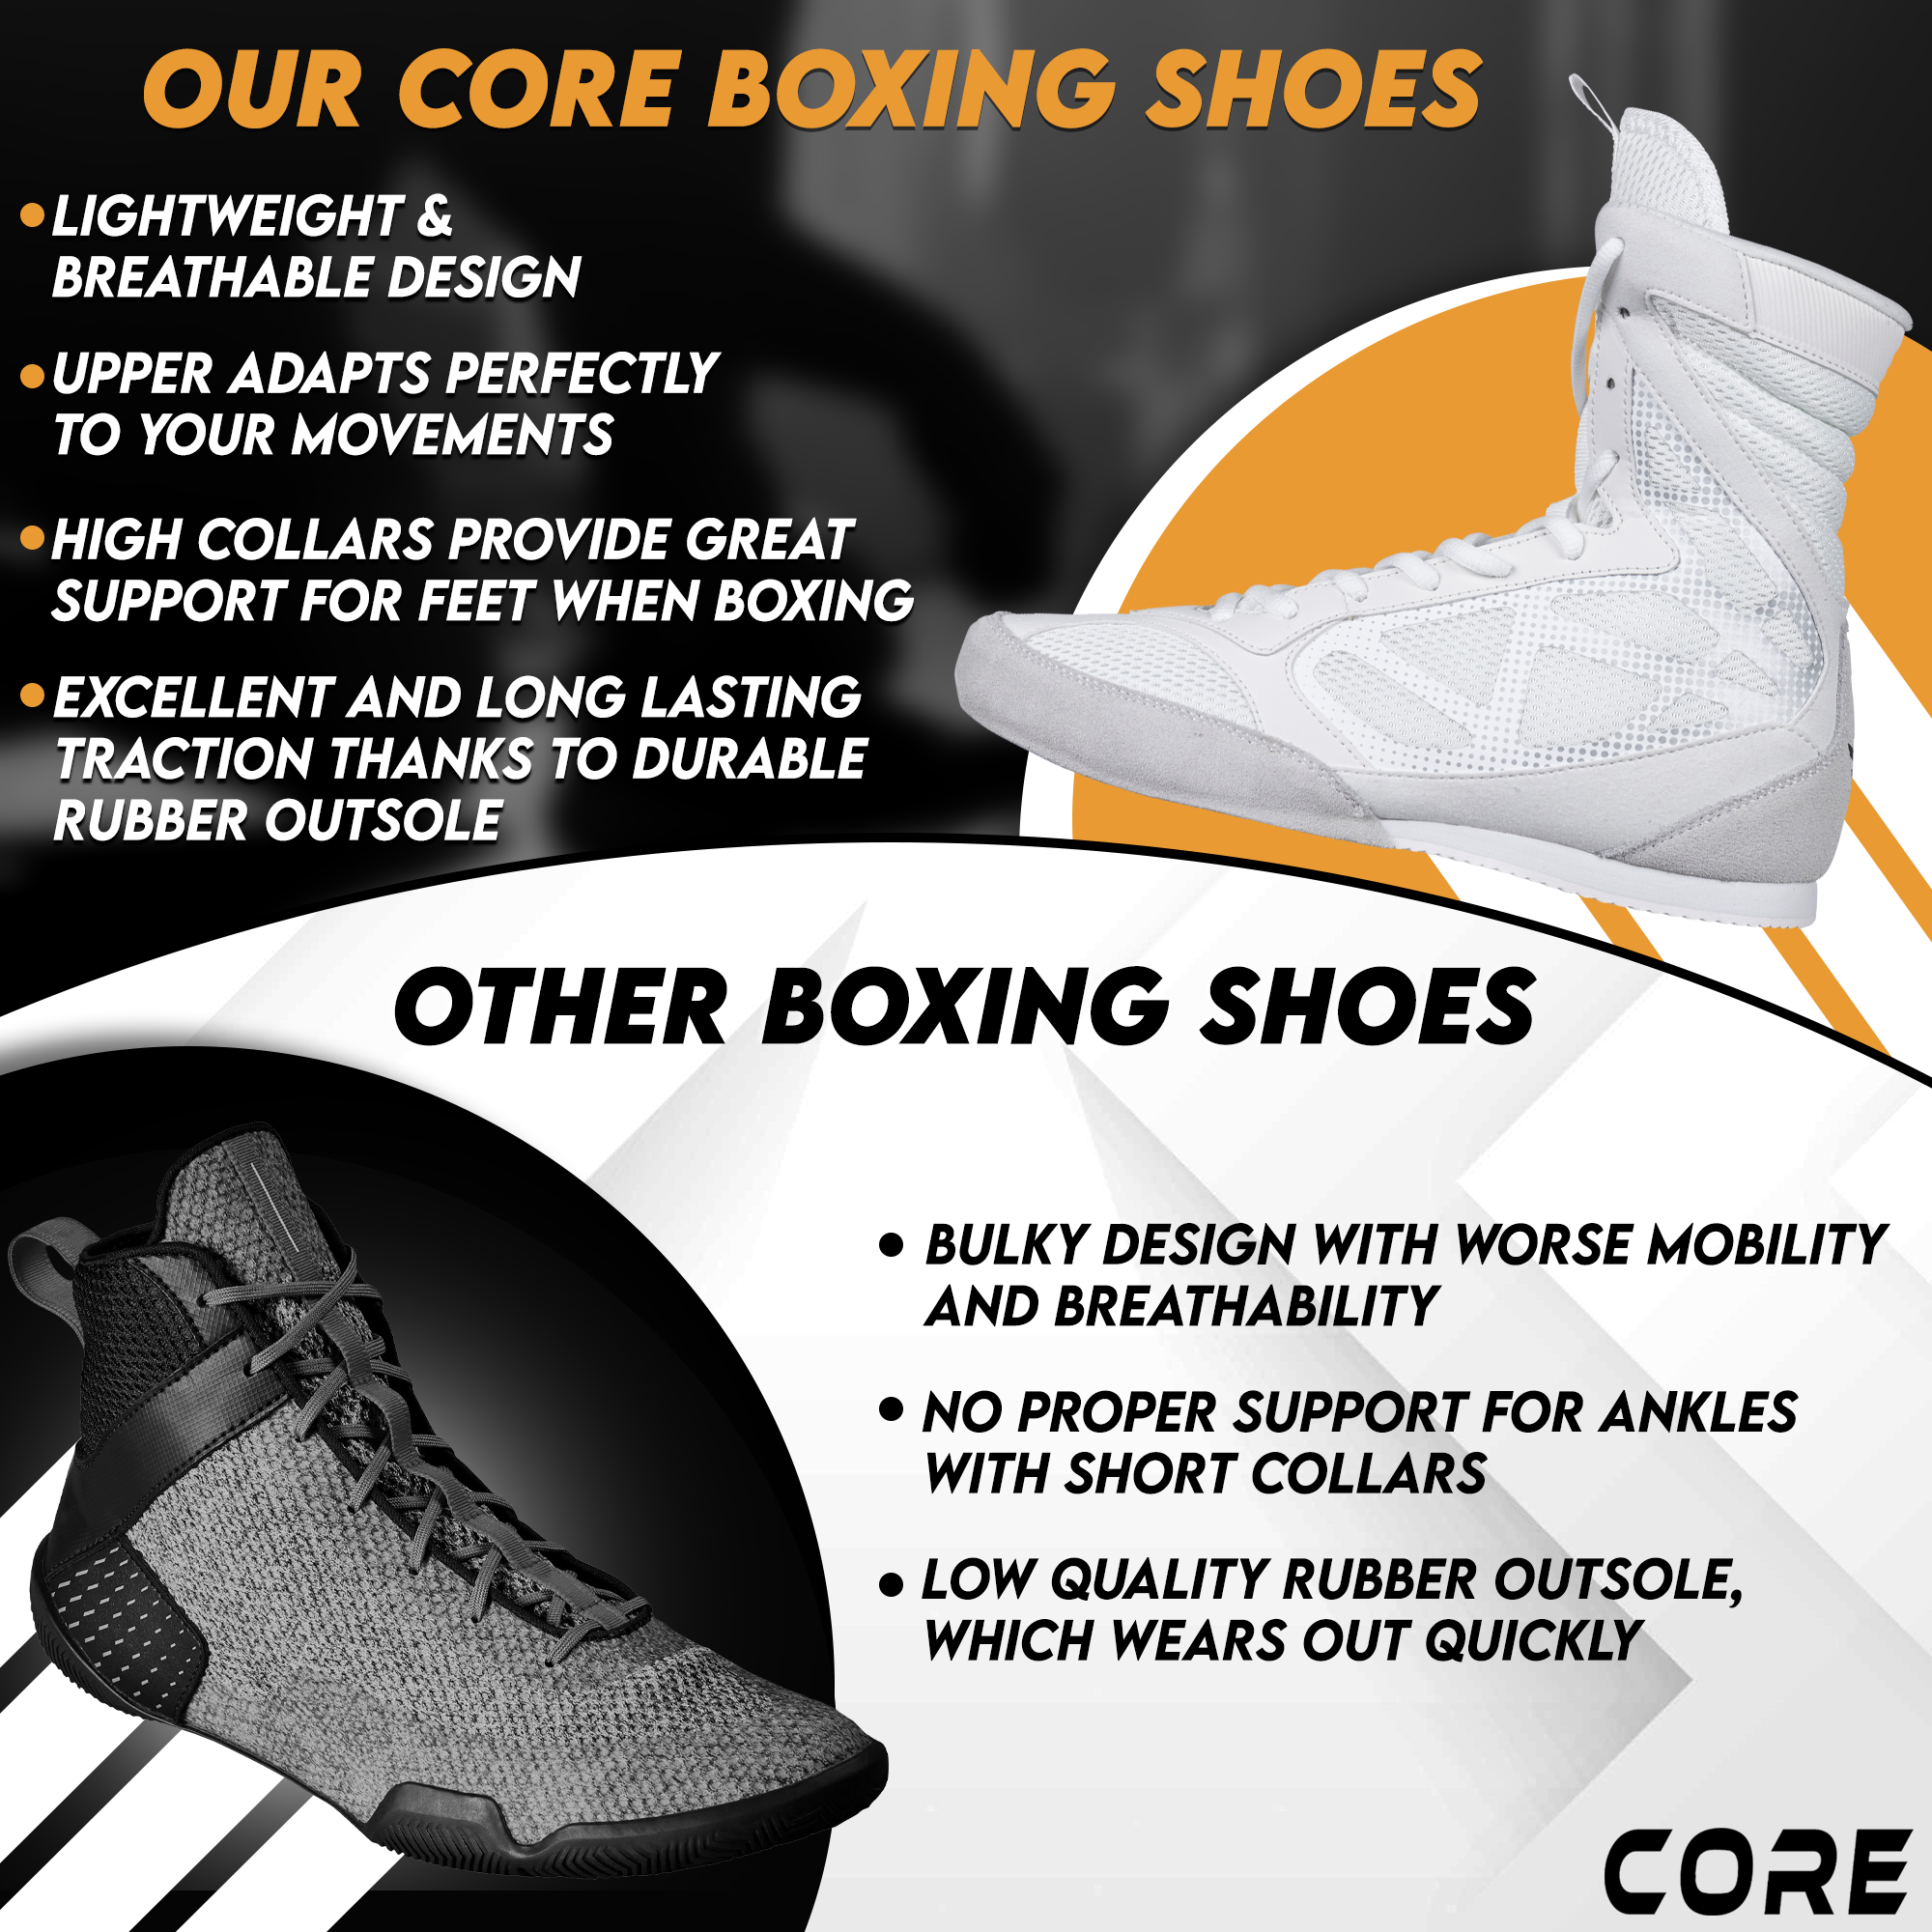 Wrestling Shoes vs Boxing Shoes: A Comprehensive Comparison